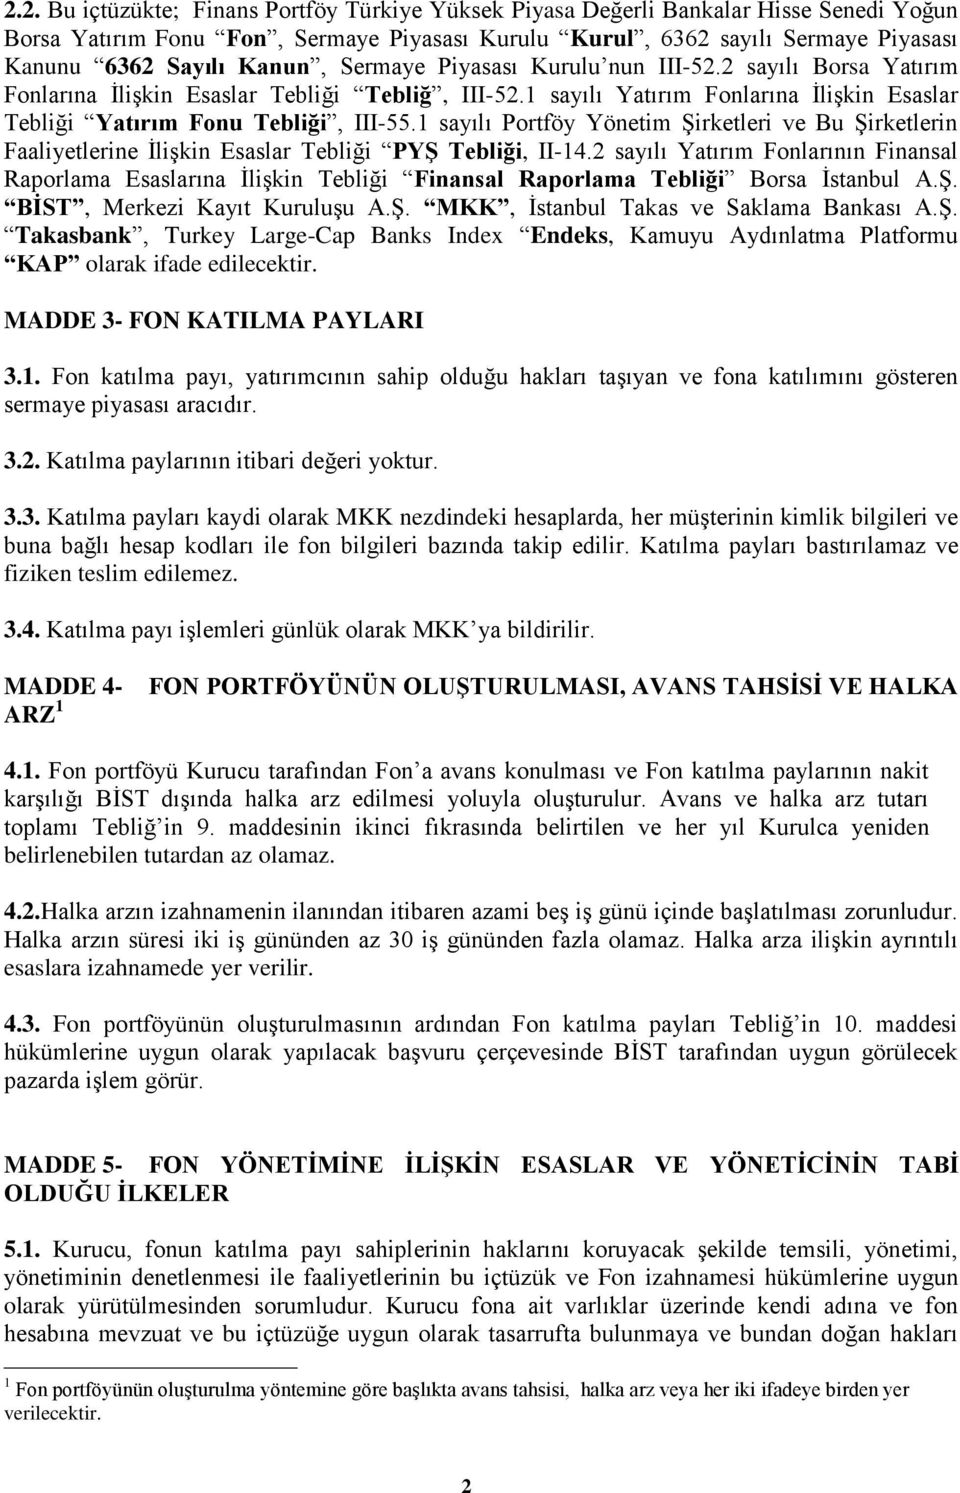 1 sayılı Portföy Yönetim Şirketleri ve Bu Şirketlerin Faaliyetlerine İlişkin Esaslar Tebliği PYŞ Tebliği, II-14.